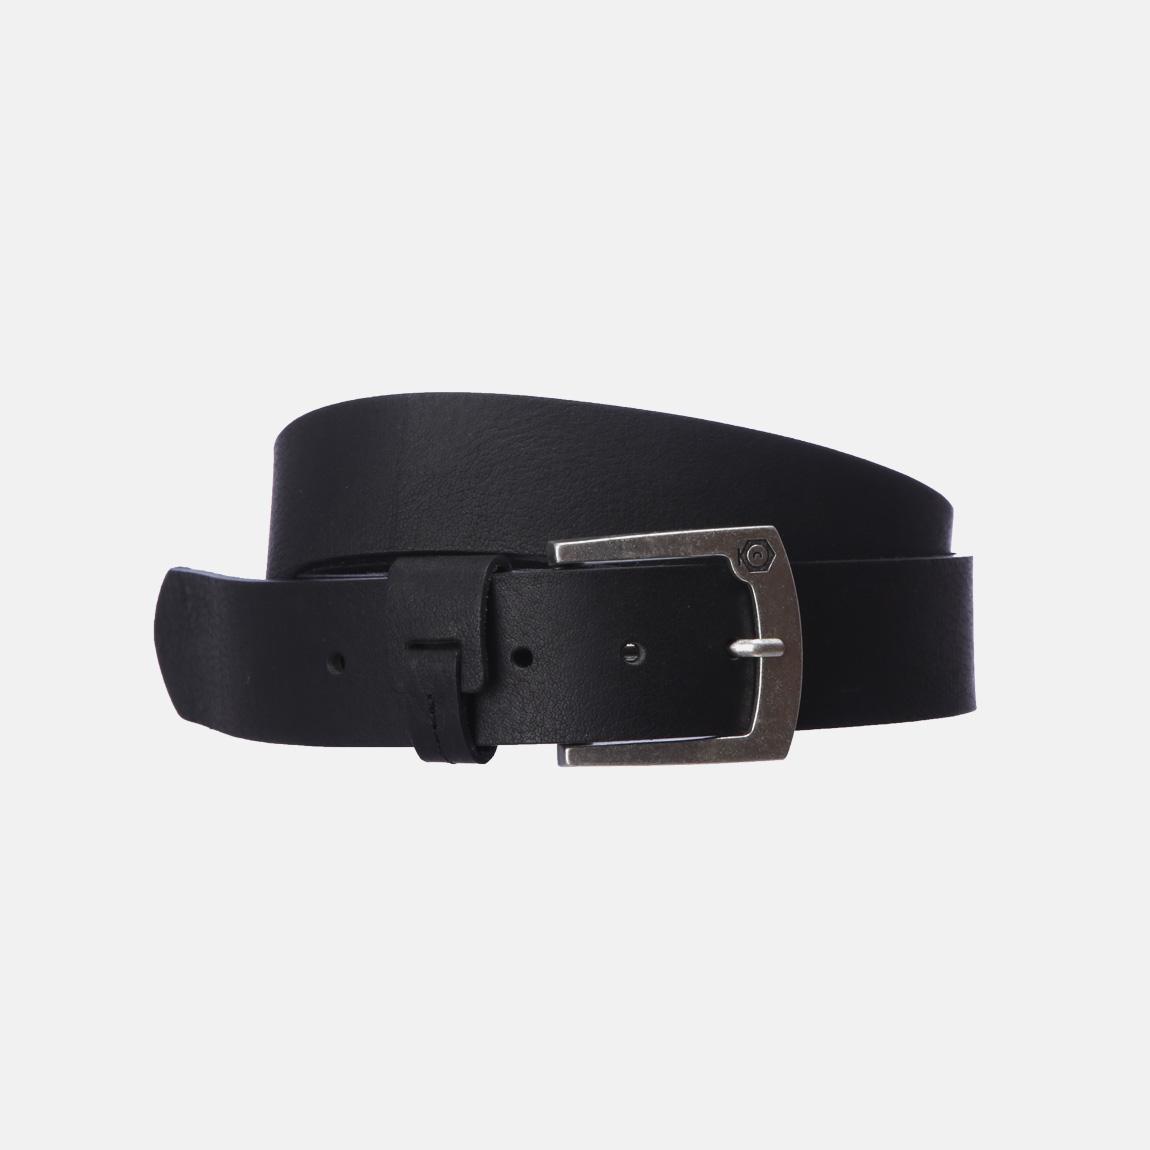 Greb Leather Belt NOOSE Core 7-8-9 – Black Jack & Jones Belts | Superbalist.com